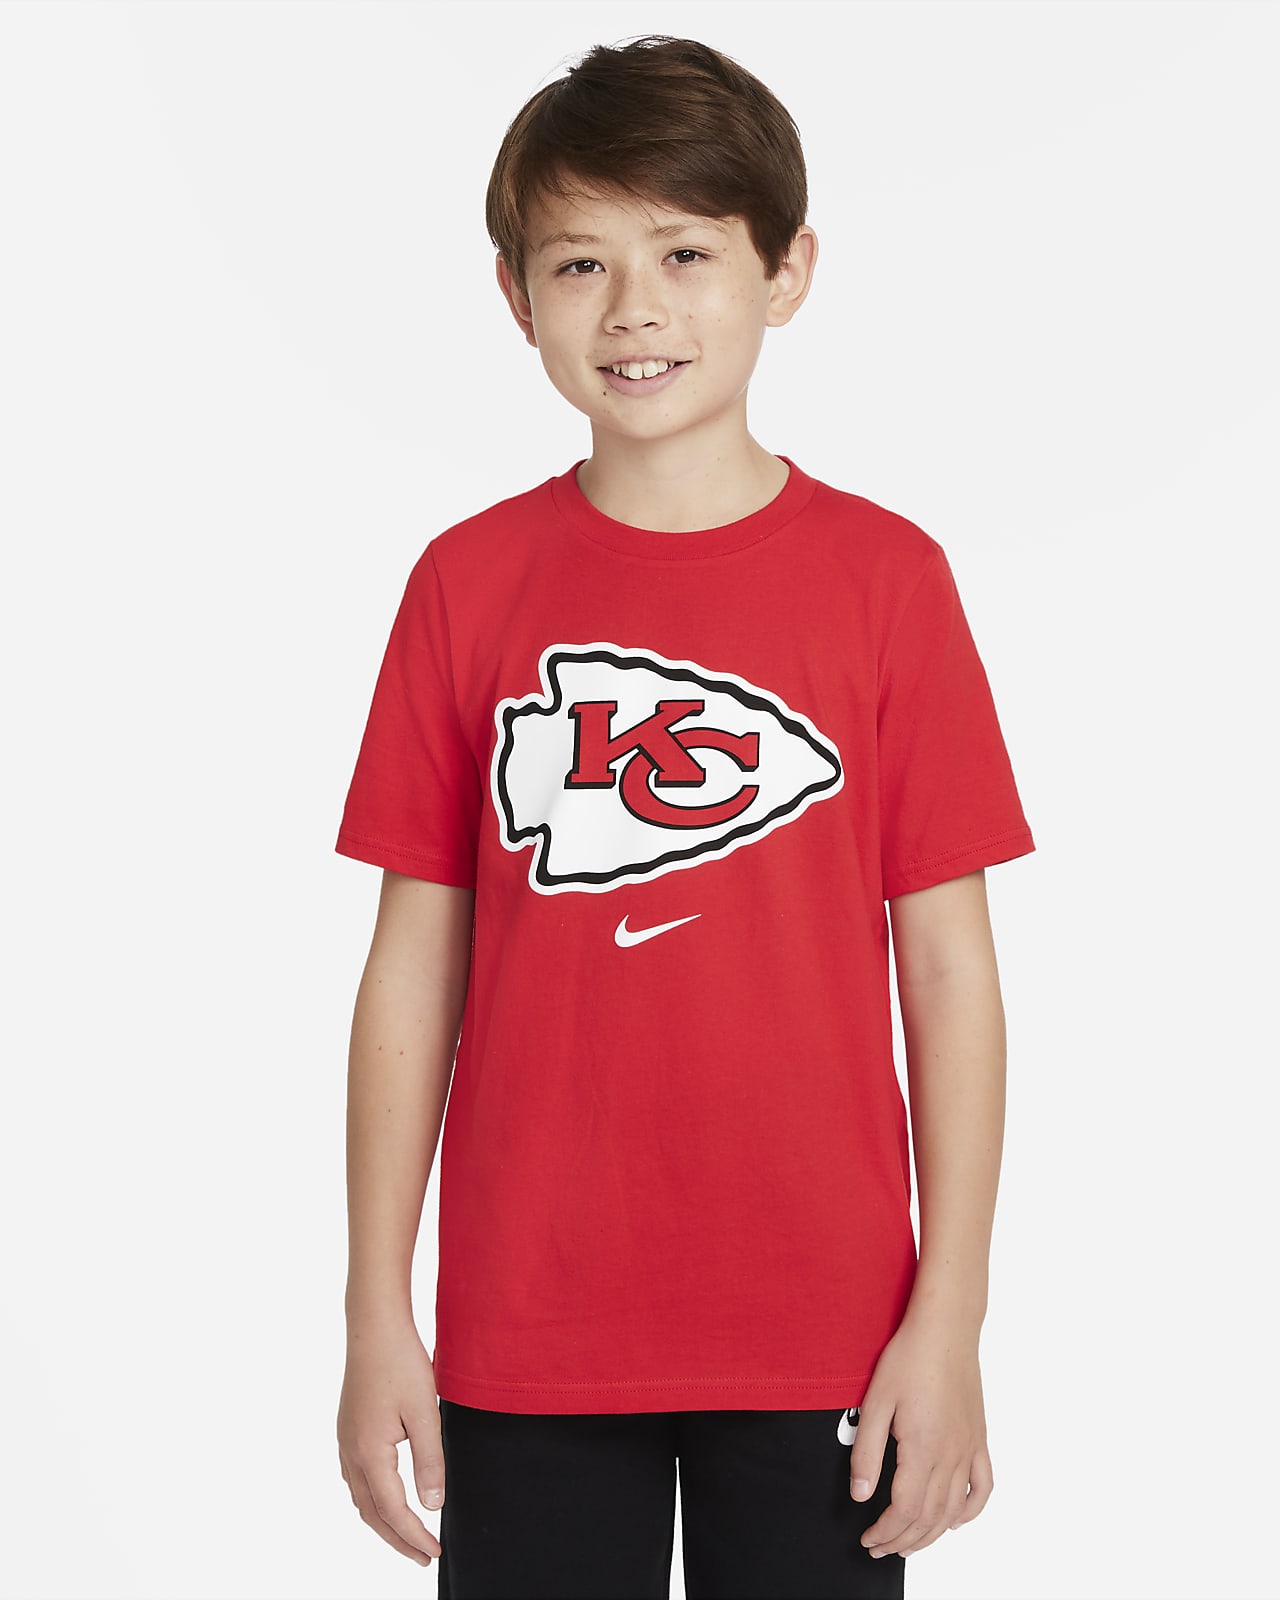 T-shirt Nike (NFL Kansas City Chiefs) - Ragazzo/a